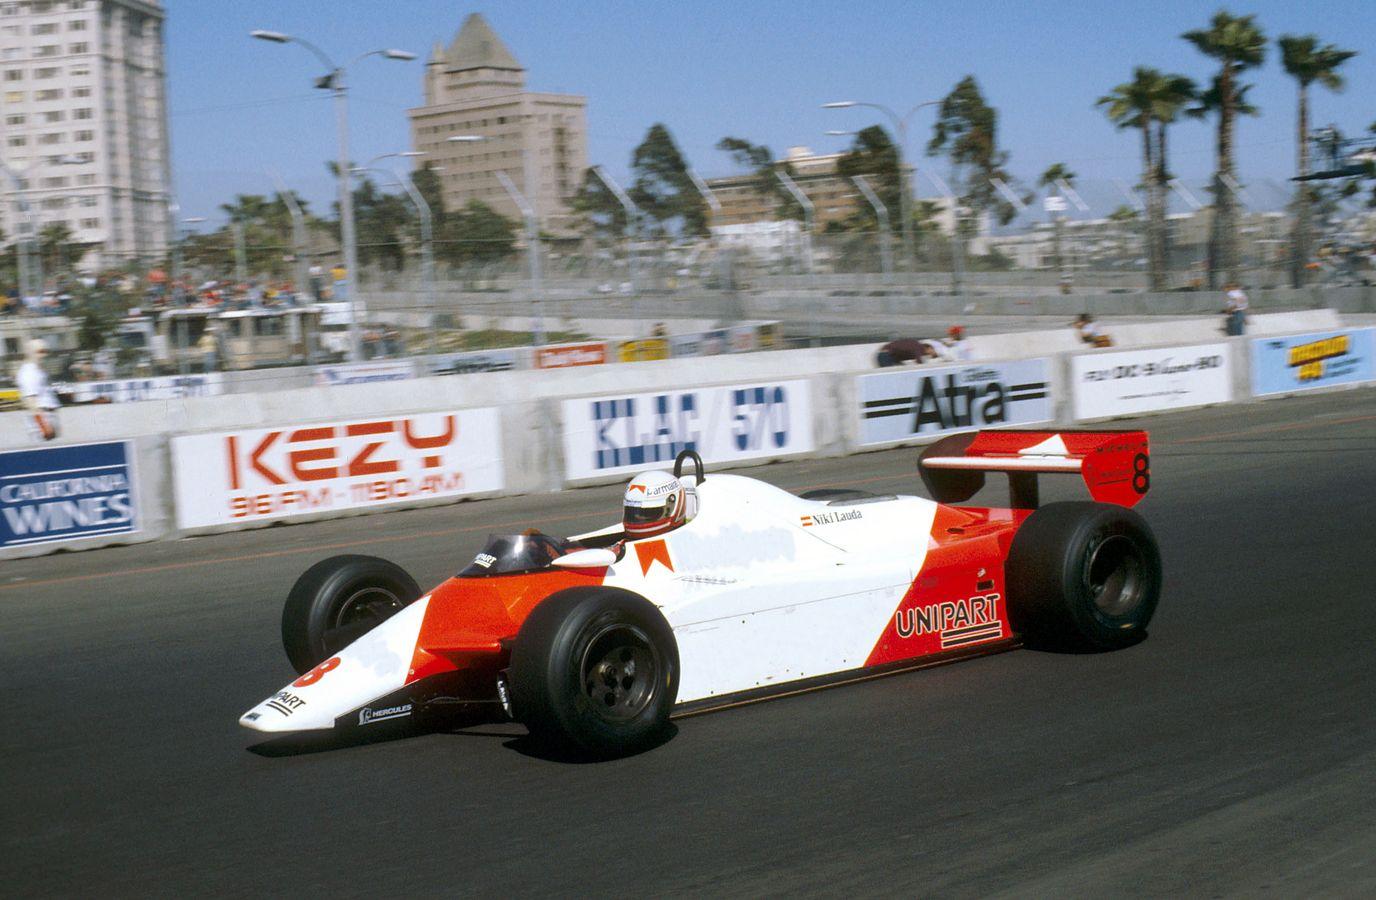 Murió a los 70 años Niki Lauda, leyenda de la Fórmula 1